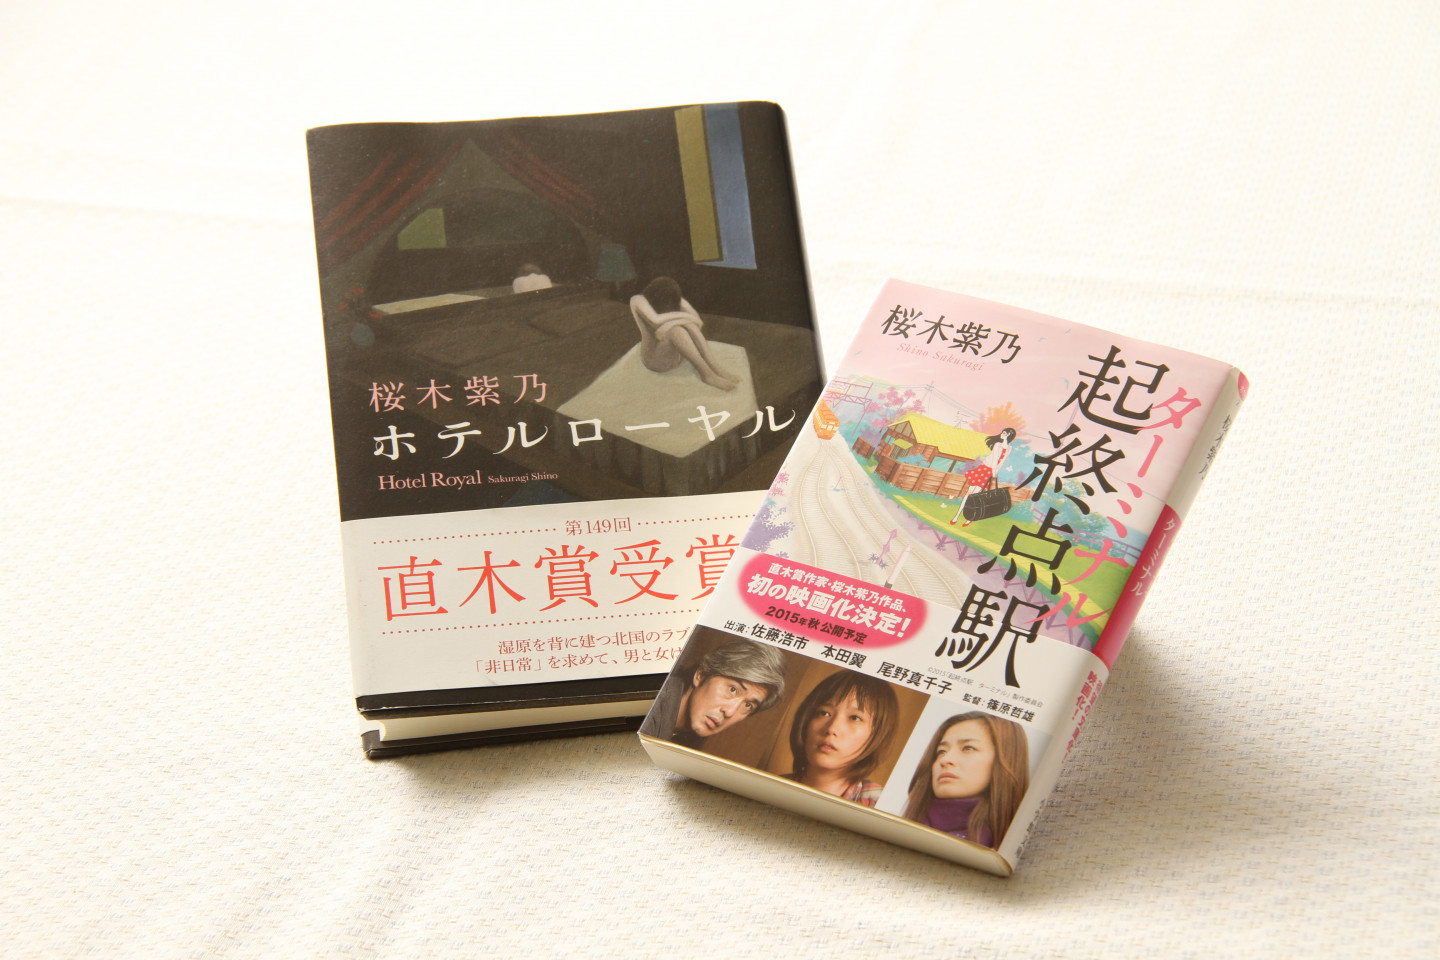 故事的舞台是釧路。 釧路市出身作家的著書。